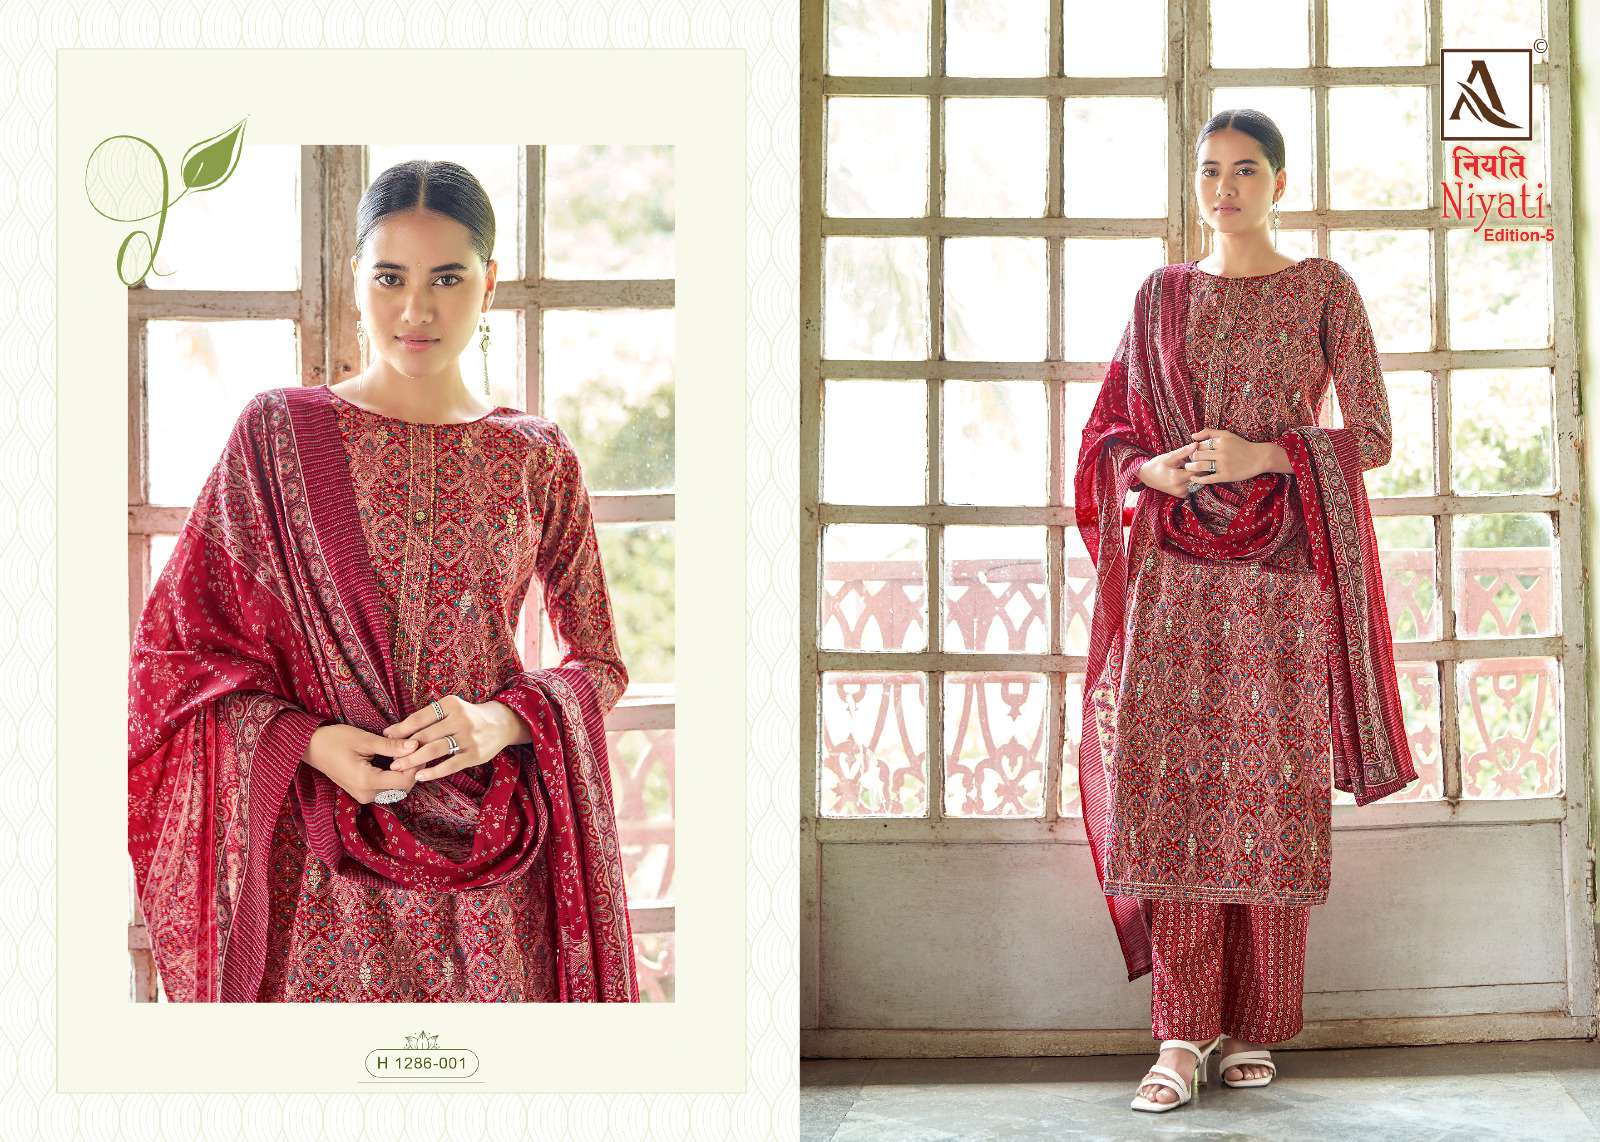 alok suit niyati edition vol-5 fancy designer salwar kameez dress material catalogue collection surat